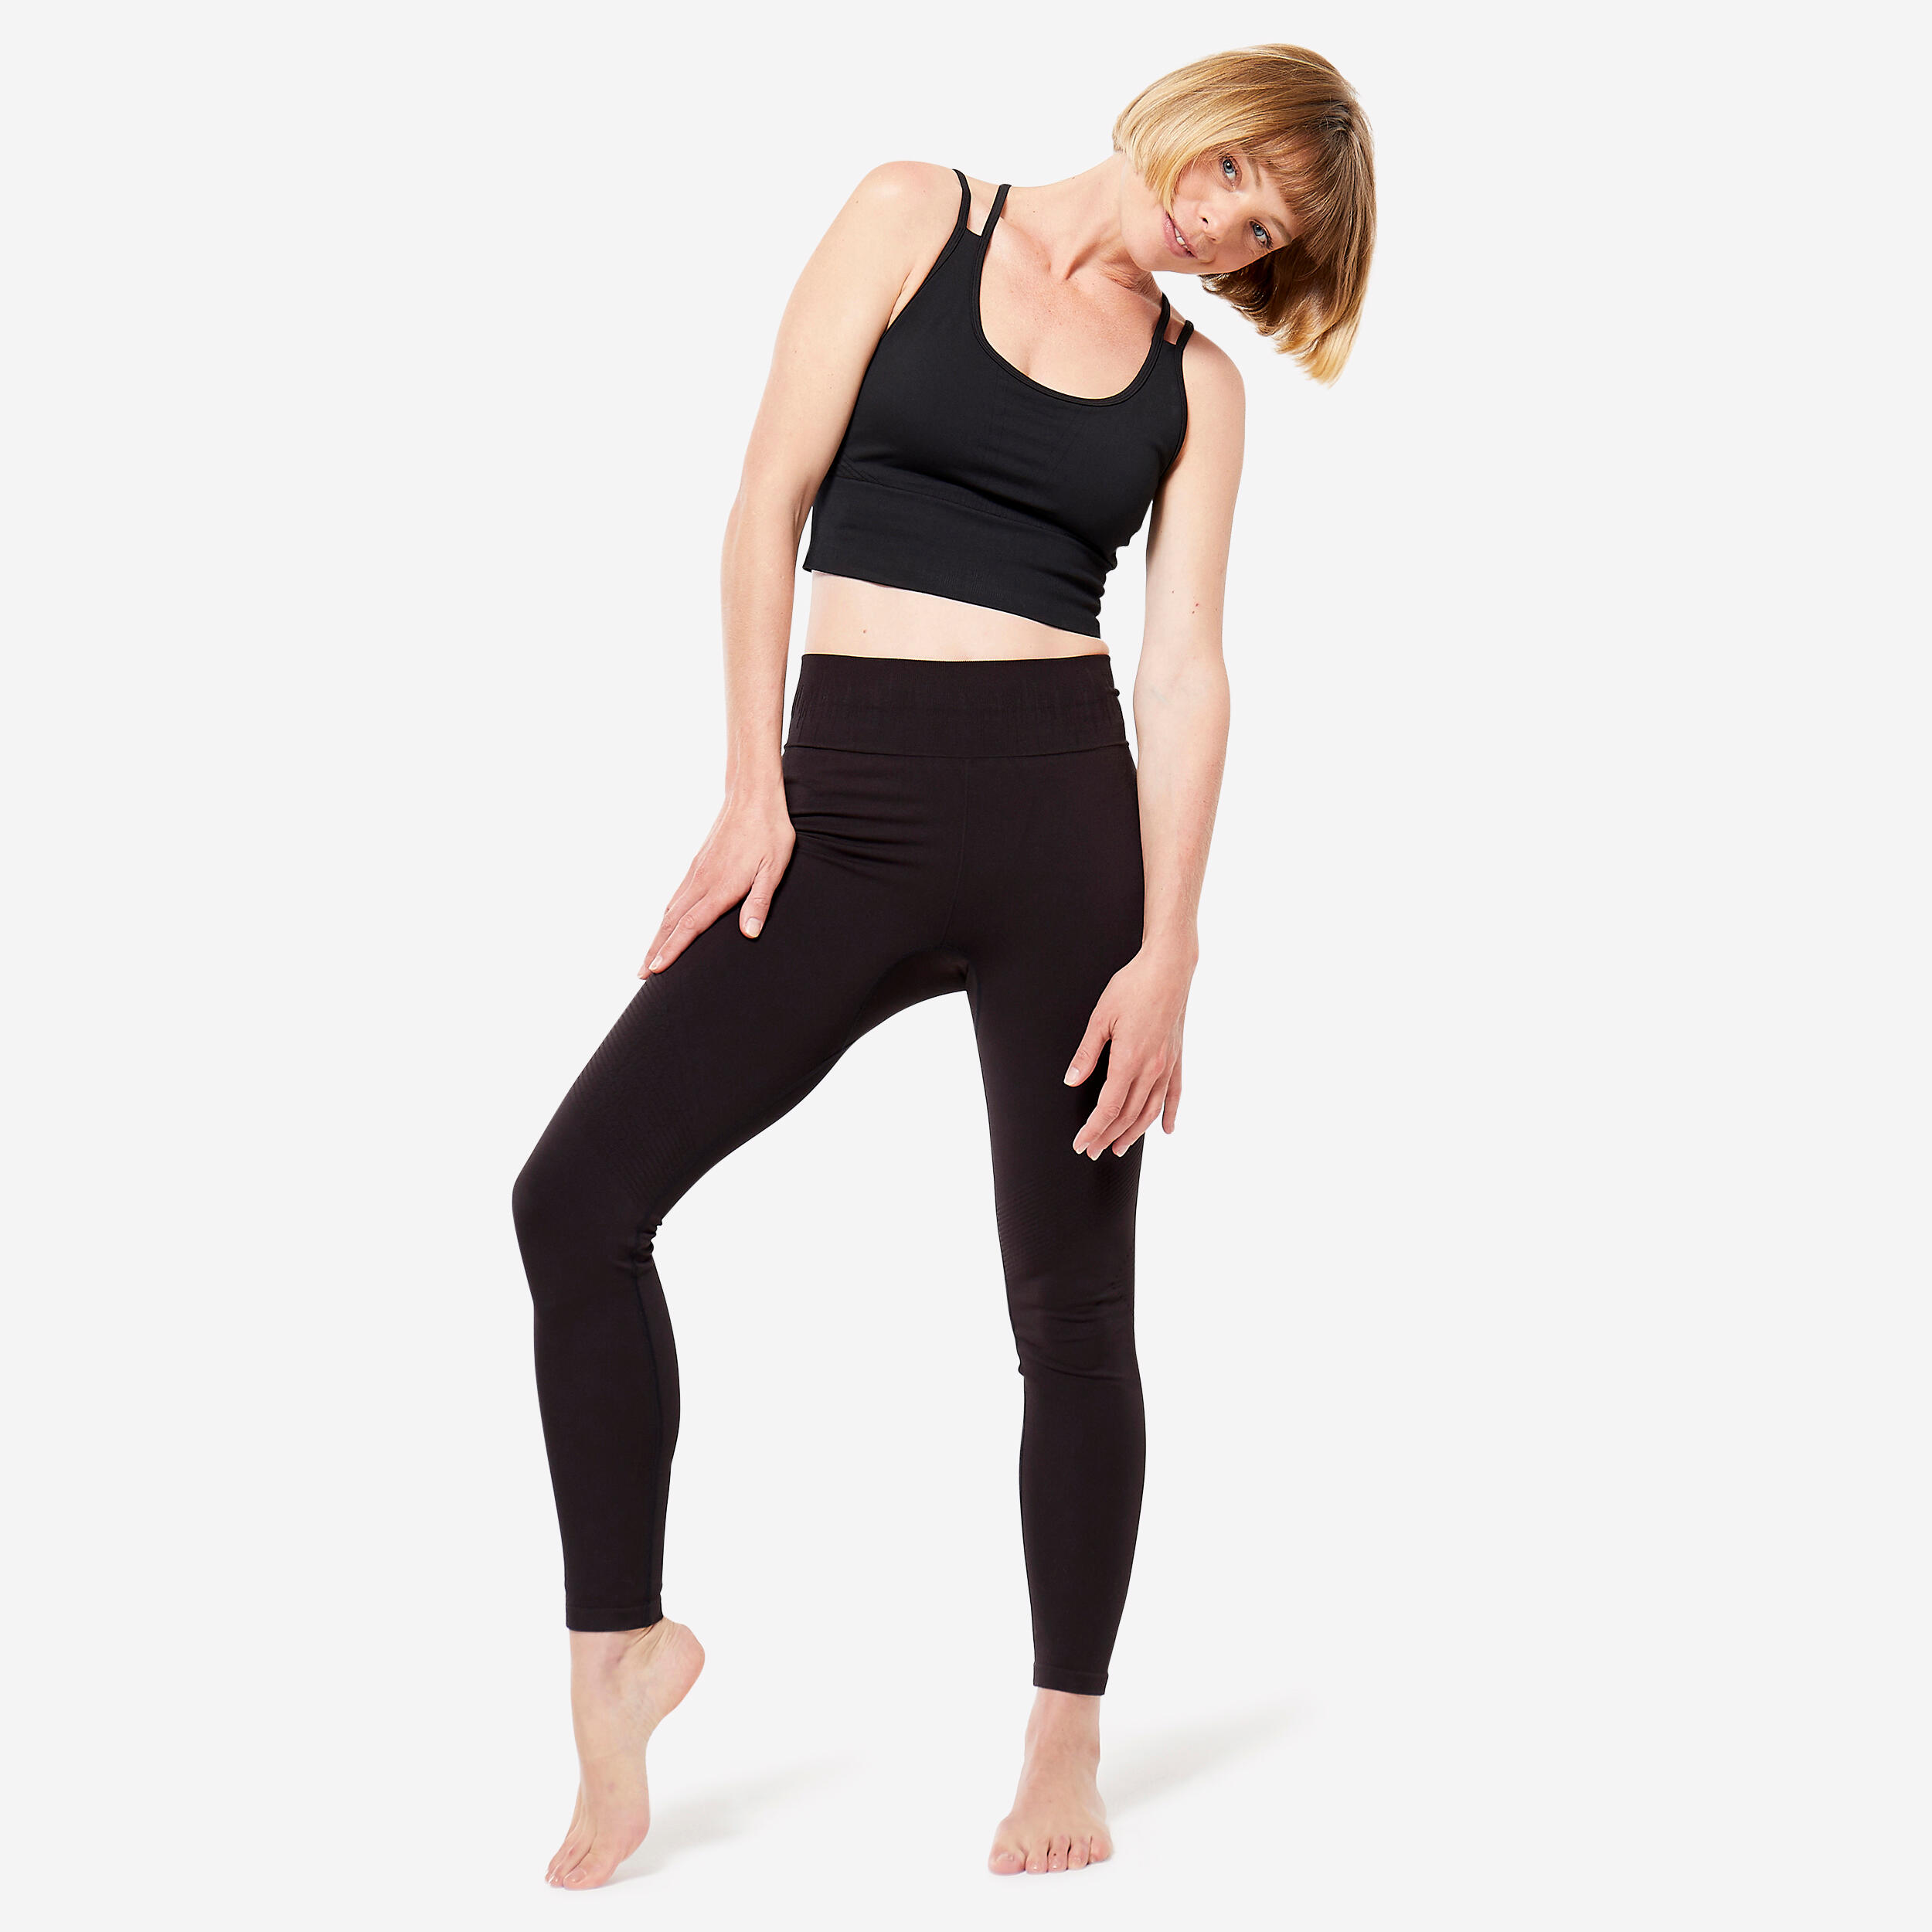  SJKLSQD Yoga Pants Women Leggings for Fitness Nylon